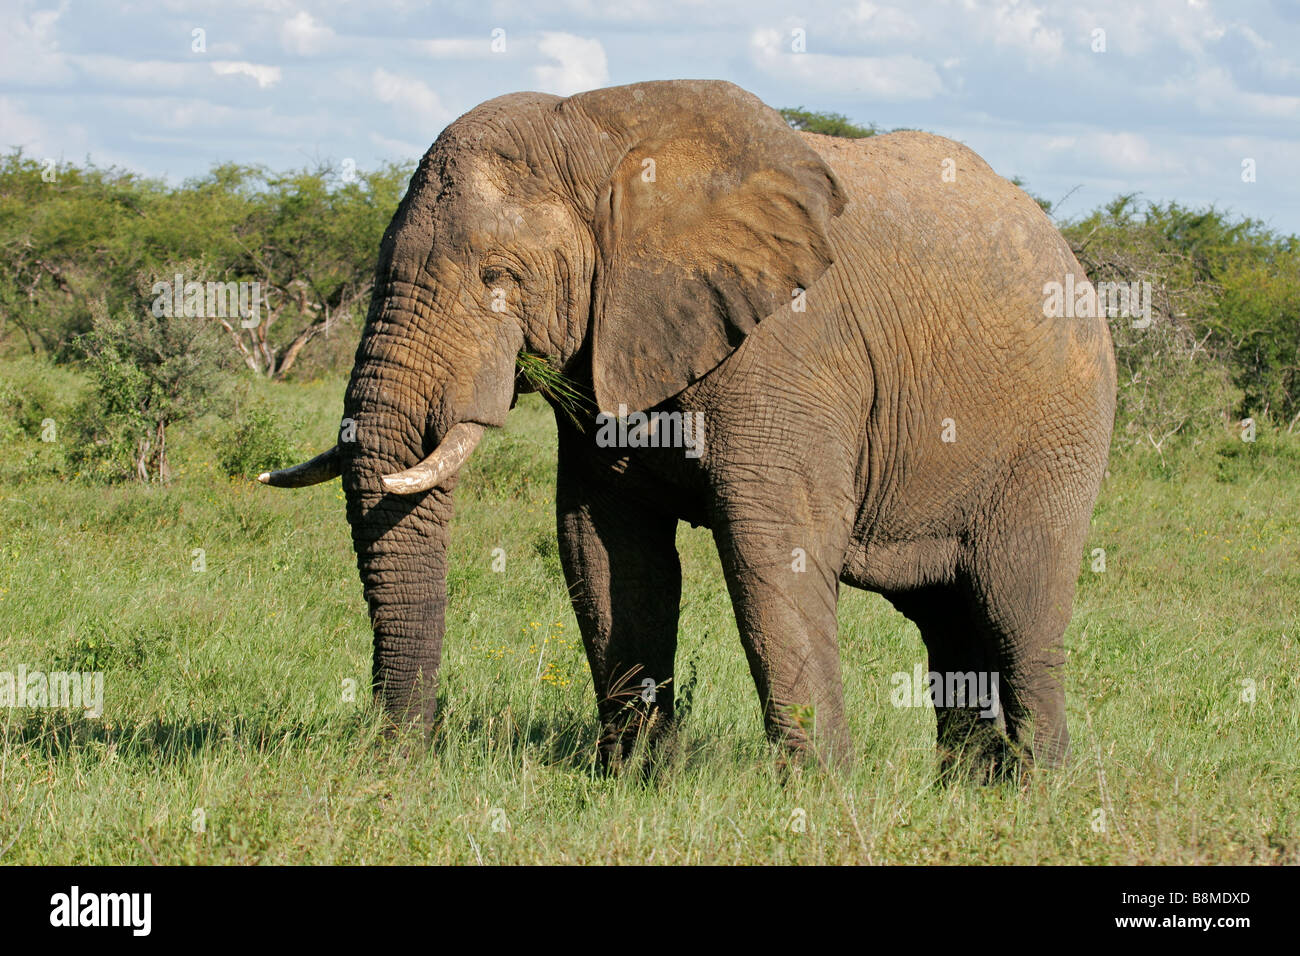 A large African bull elephant (Loxodonta africana), Hwange National Park, Zimbabwe, southern Africa Stock Photo